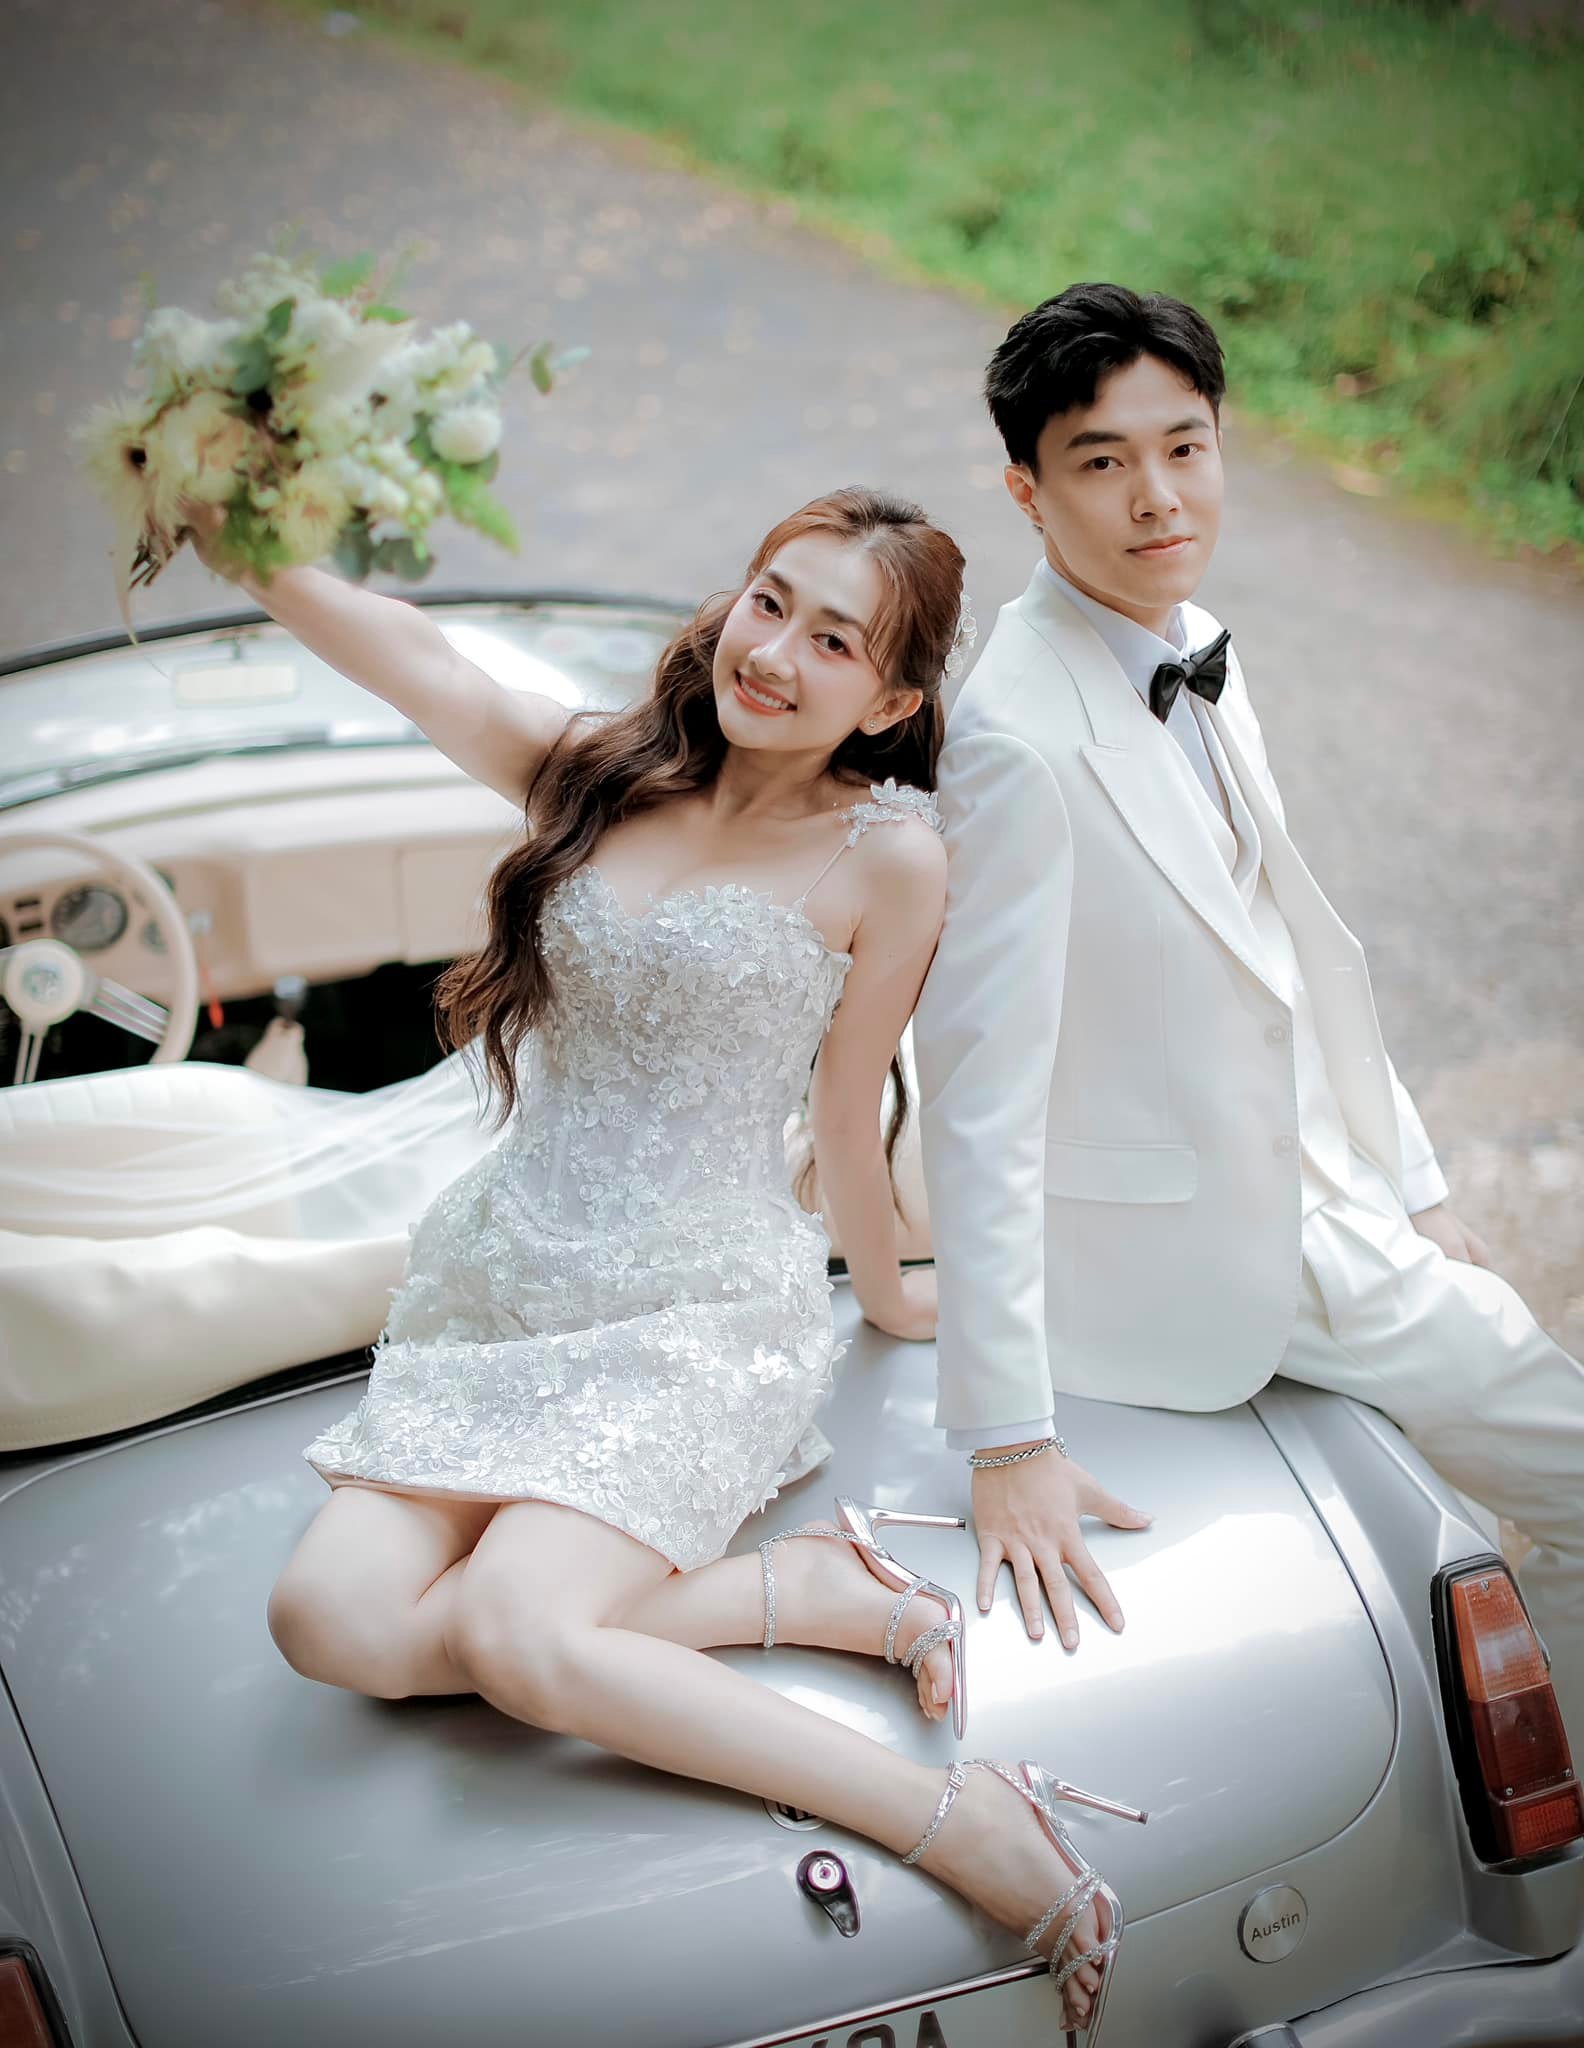 5 đám cưới sao Việt được mong chờ nhất cuối năm: Gin Tuấn Kiệt và Puka đẹp đôi, Sam quyết giấu mặt chú rể - ảnh 6